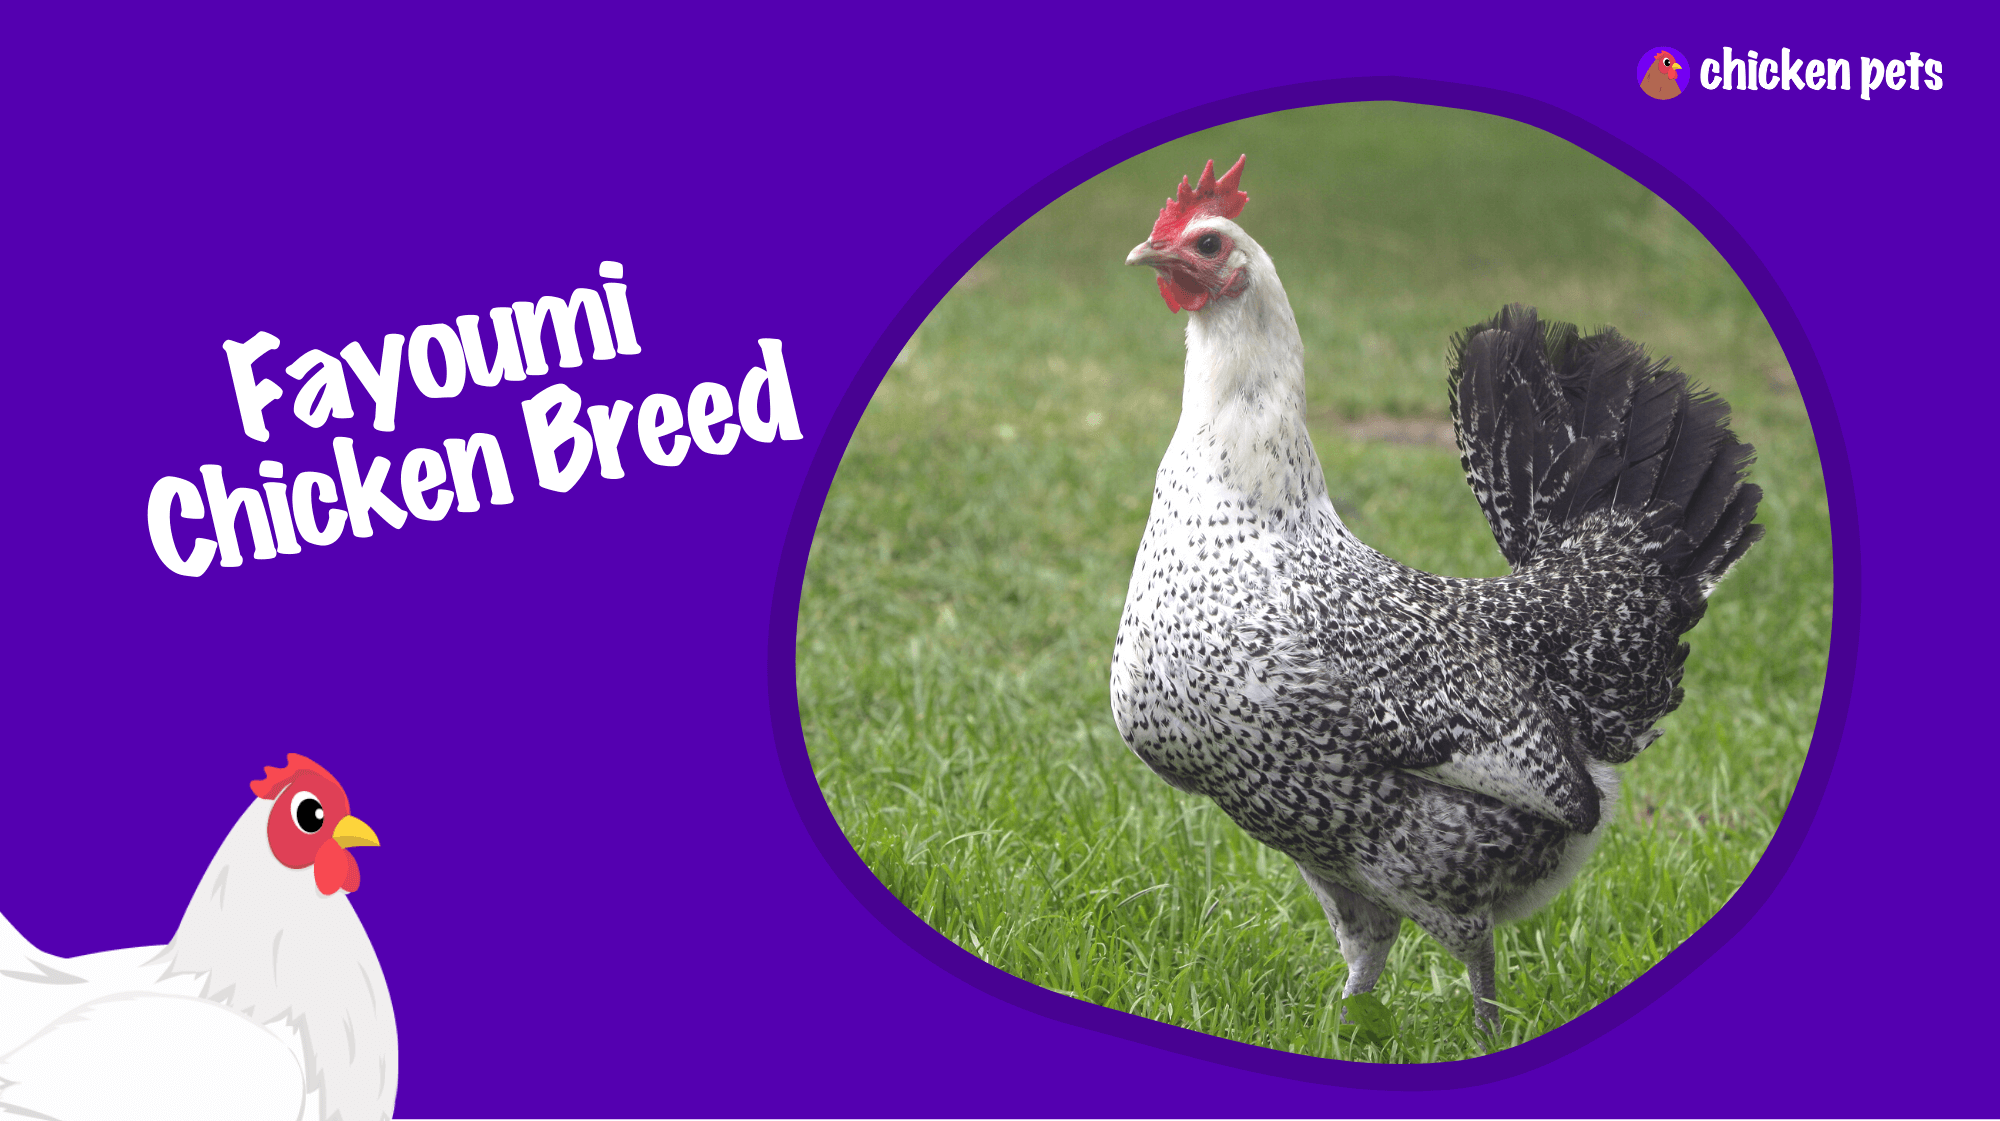 Fayoumi chicken breed